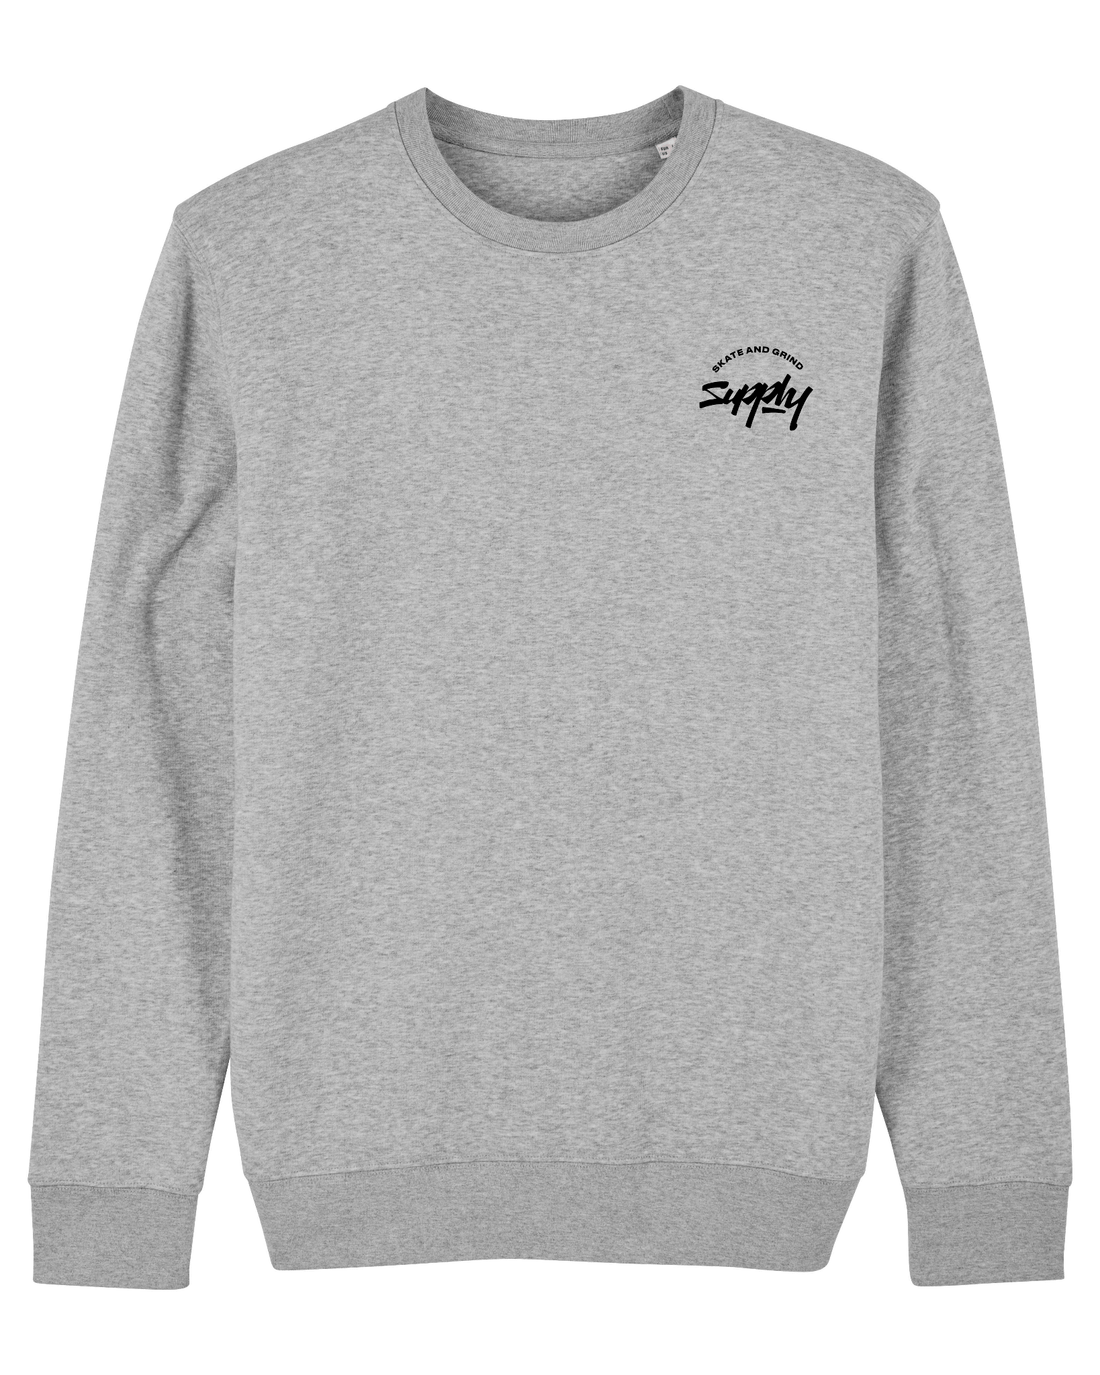 Grey Skater Sweatshirt, Skate & Grind Front Print